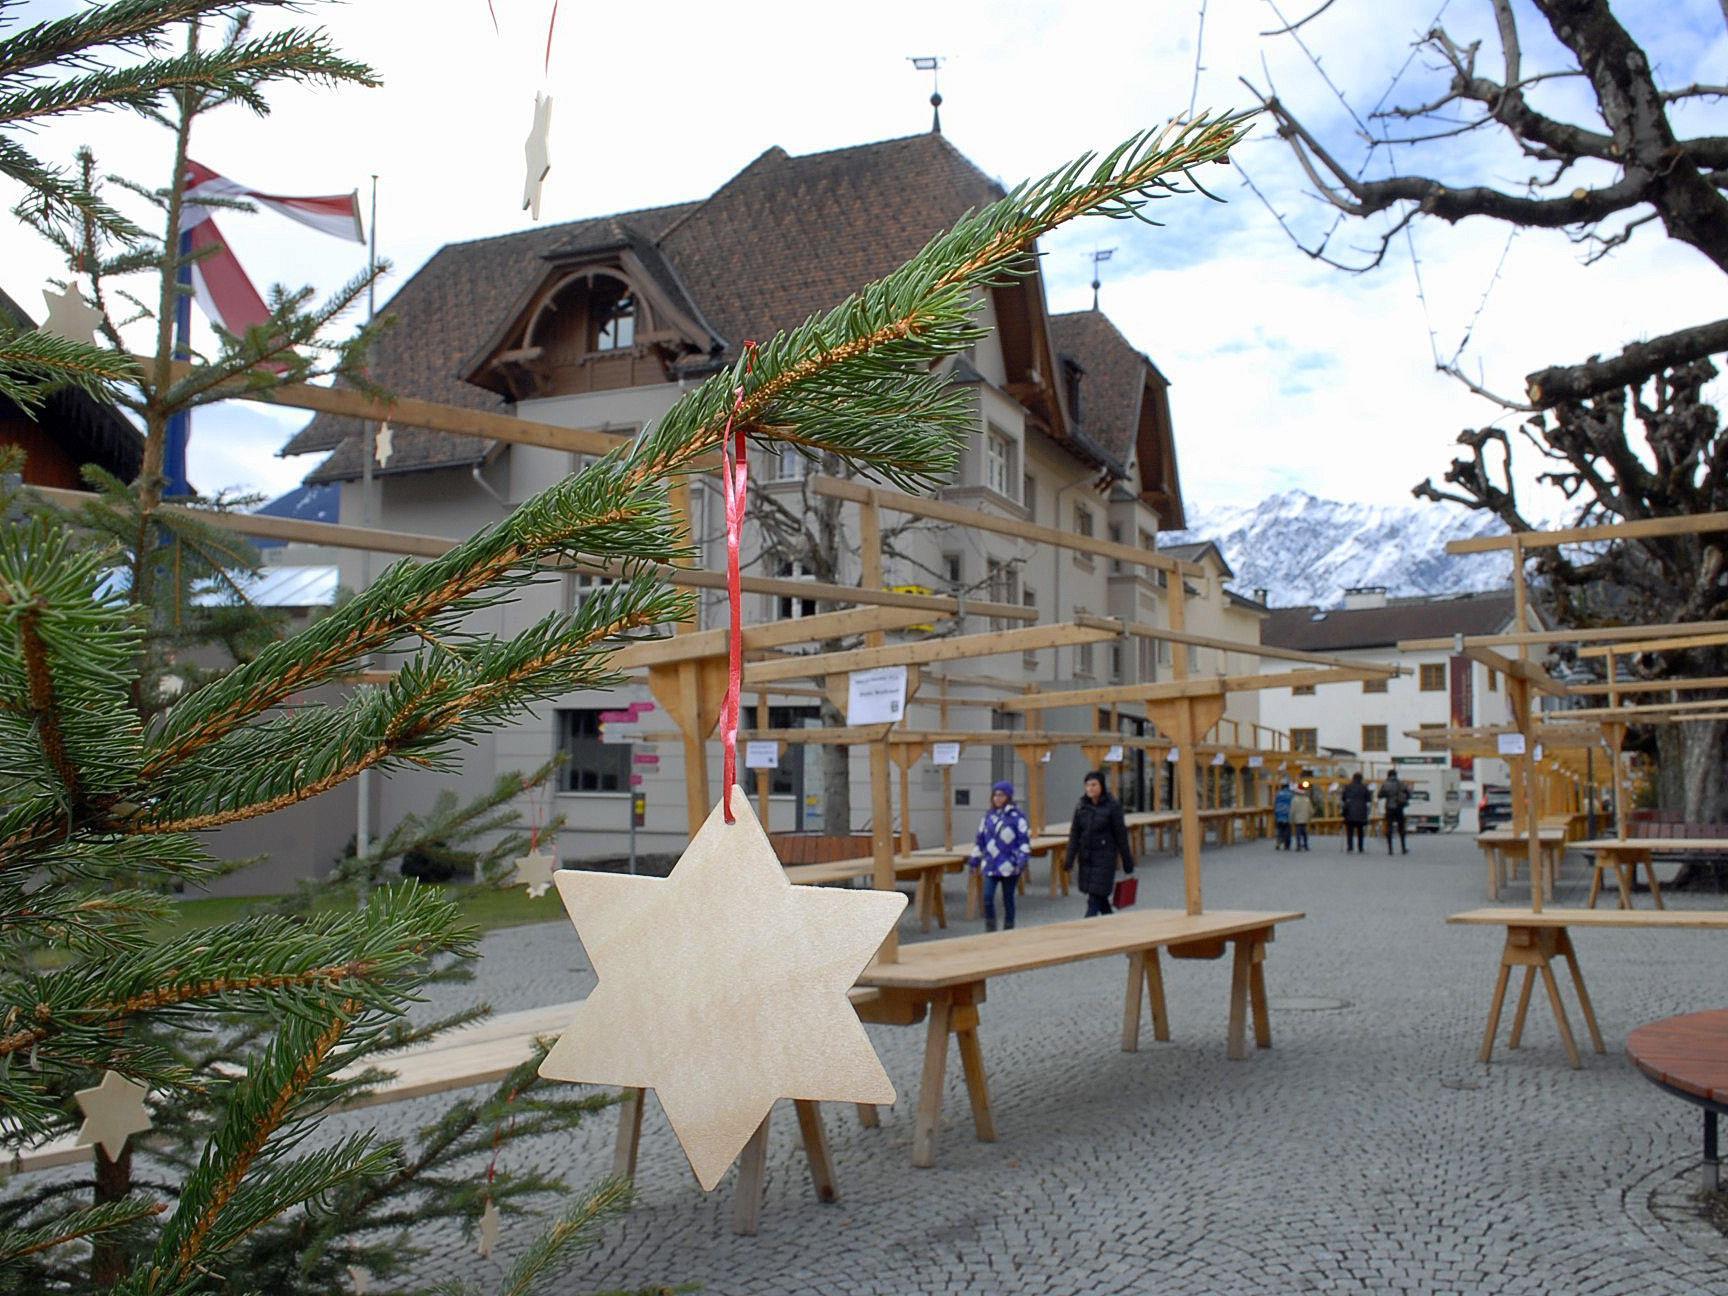 Schruns erwartet am "Silbriga Sonntig" einen großen Besucherandrang beim Weihnachtsmarkt.